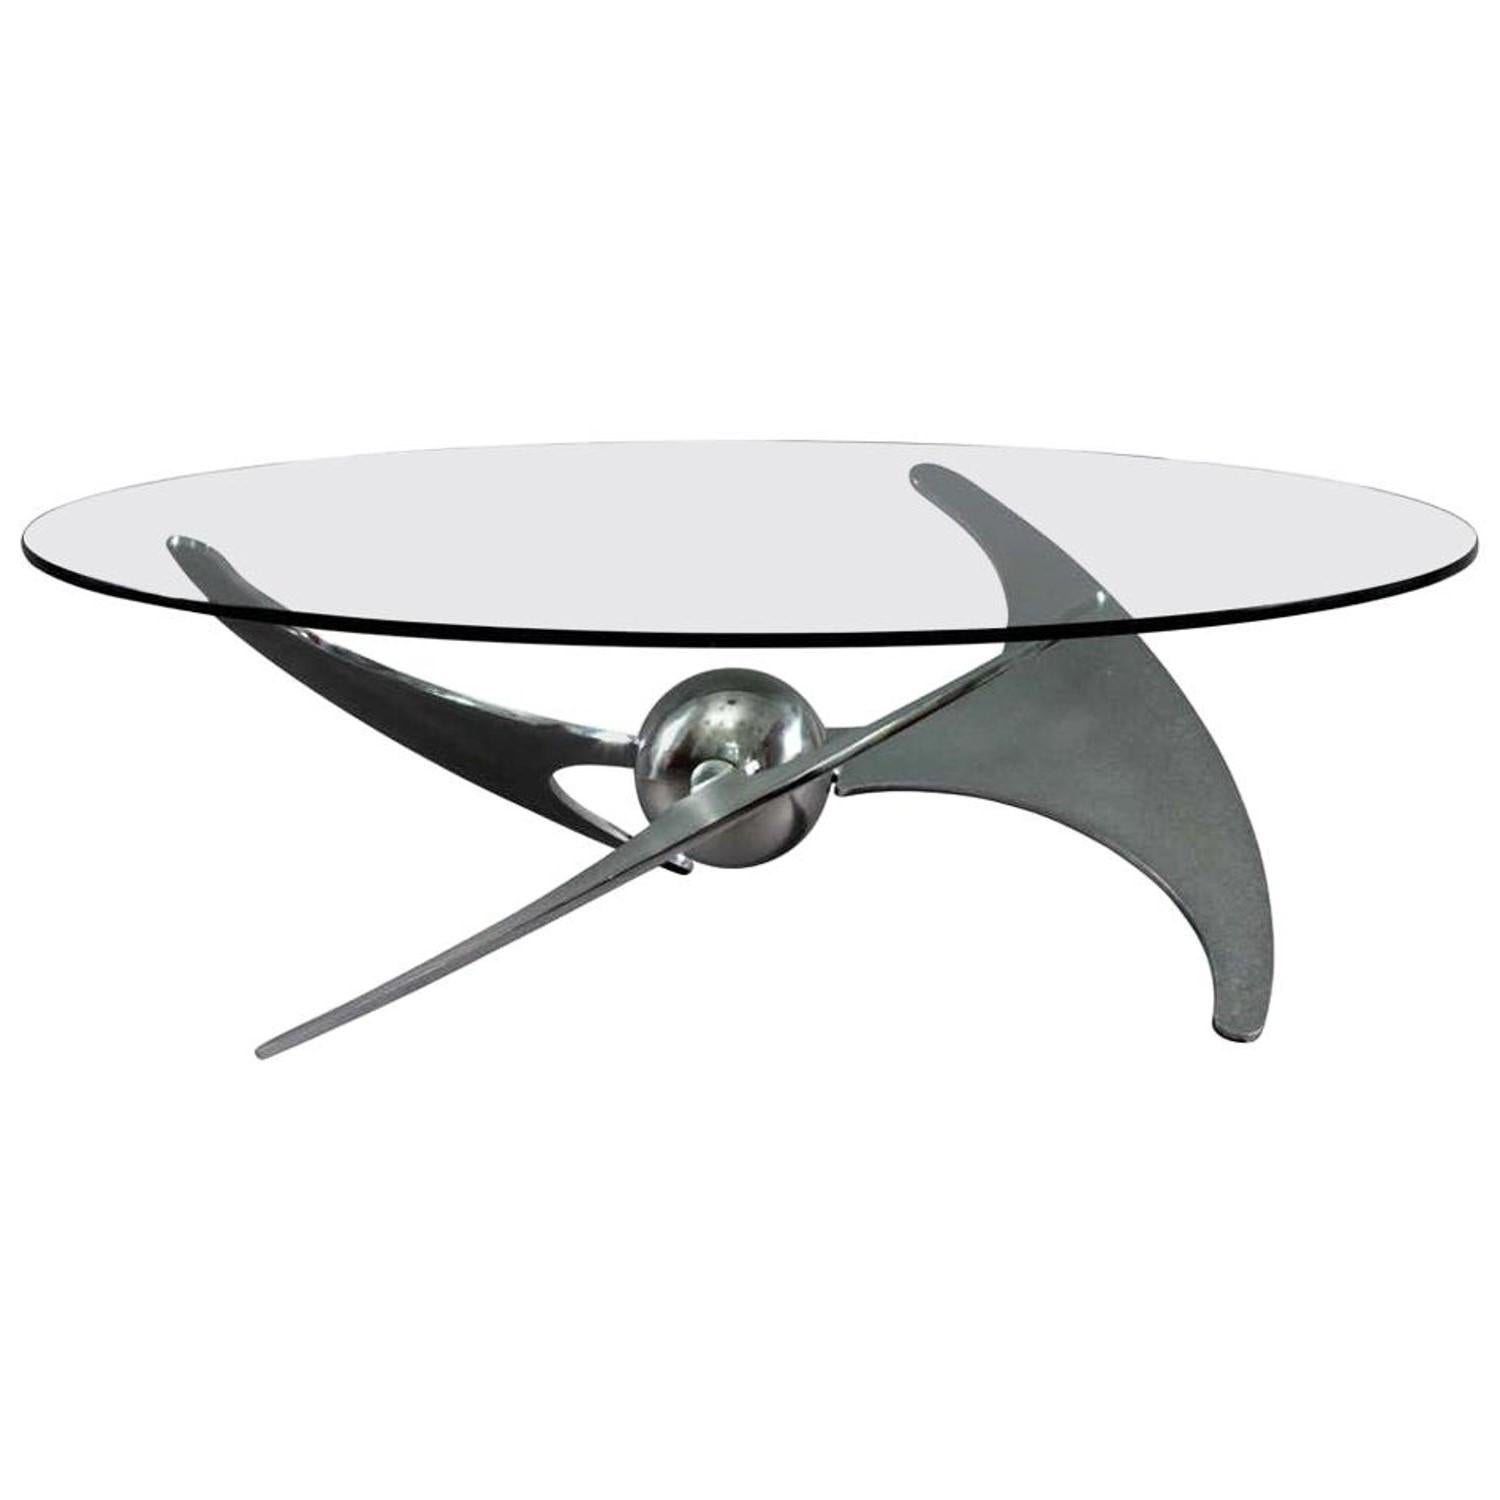 Der Propeller-Tisch wurde von L. Campanini für Cama in Italien entworfen. Es verfügt über einen verchromten Stahlfuß, der auf zwei Höhen (46 oder 68 cm (variabel einstellbar)) eingestellt werden kann.

Der Tisch kann daher als Ess- oder Couchtisch